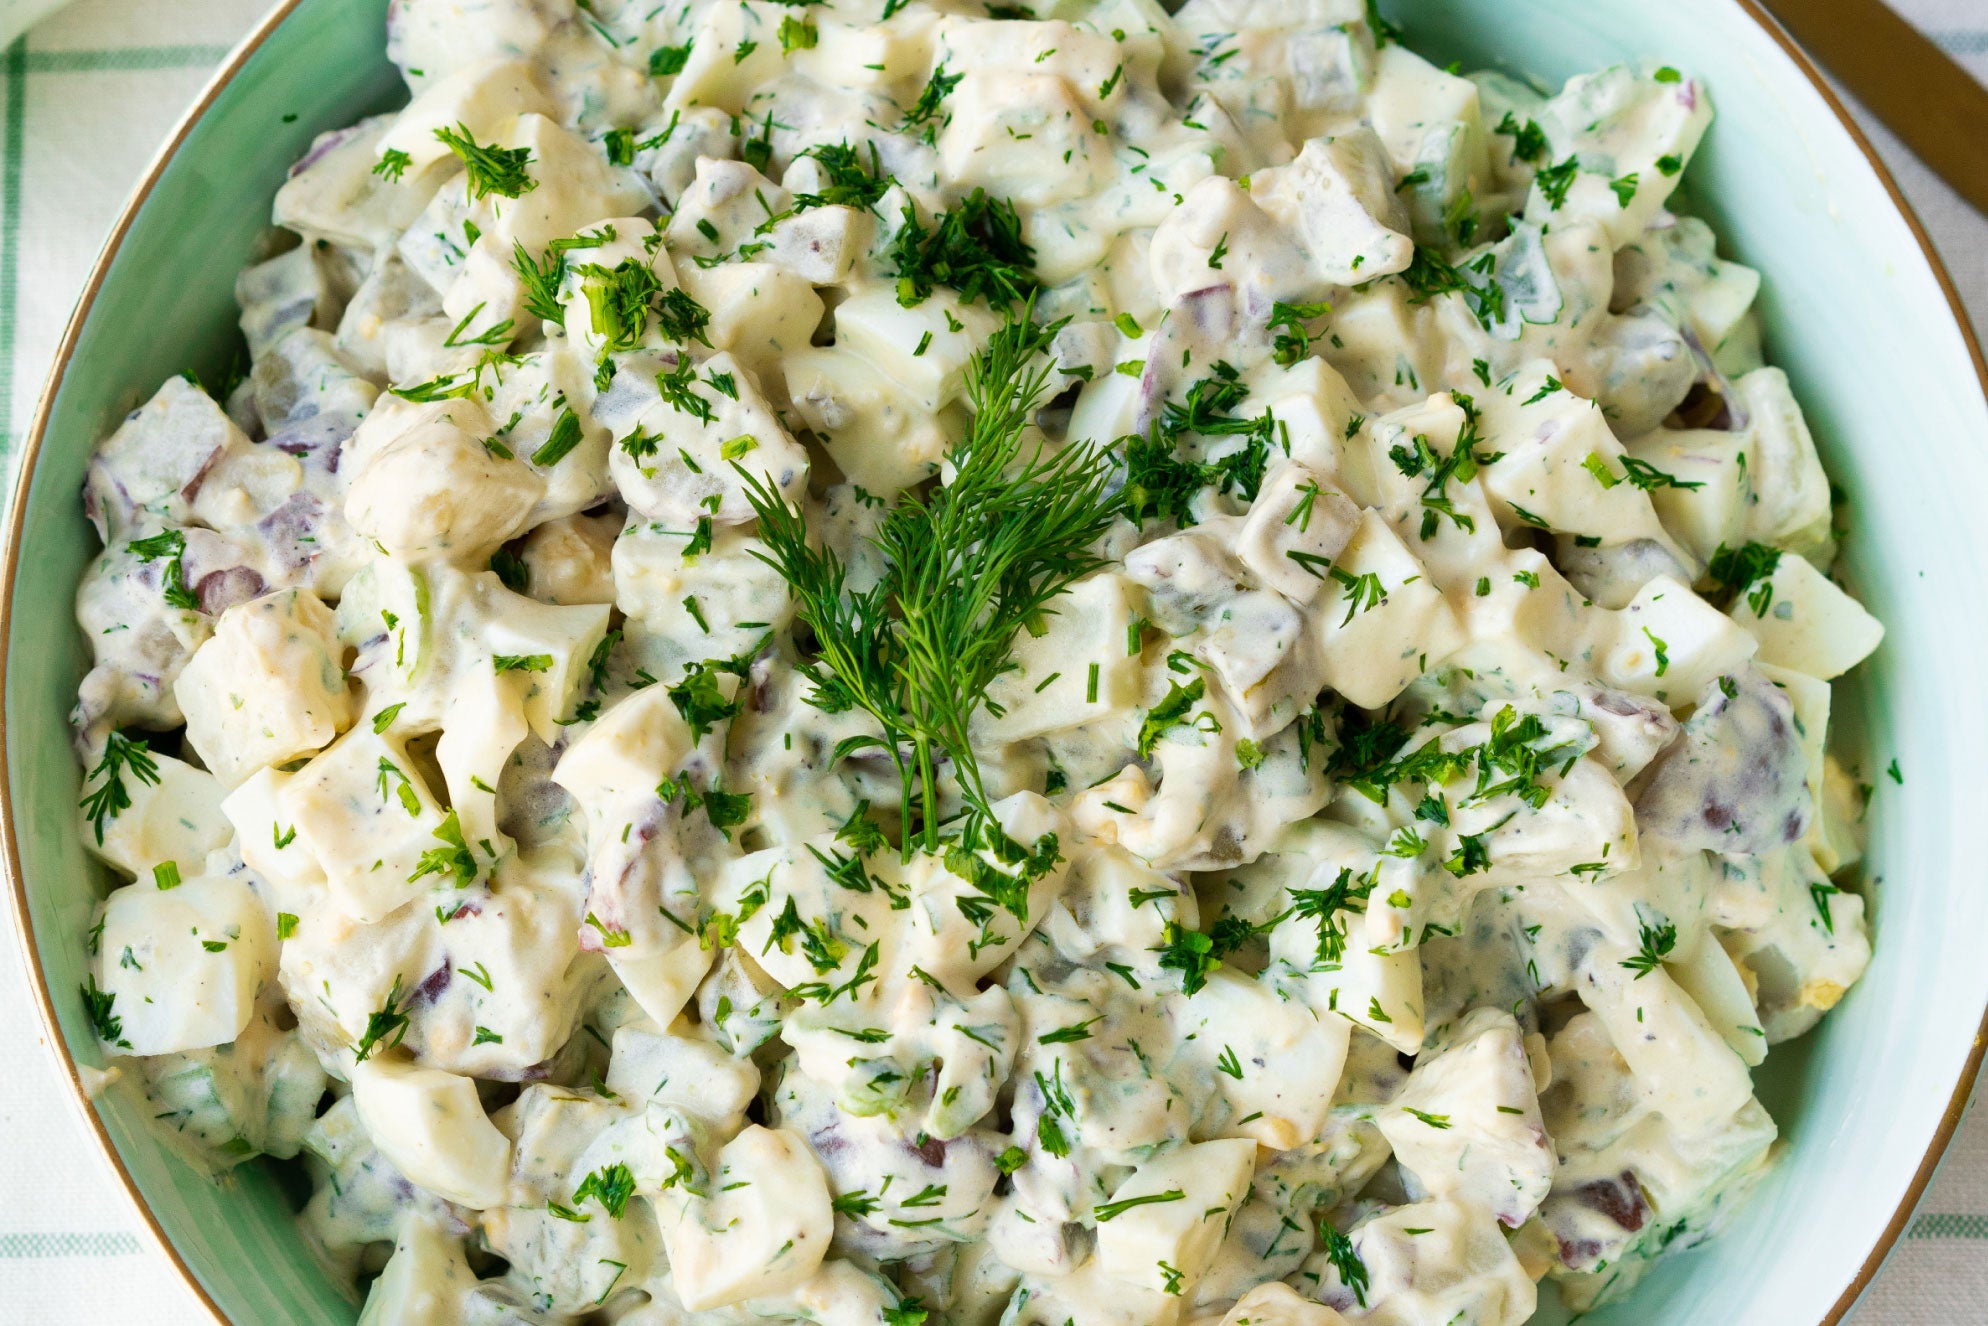 Pickity Place — Potato Salad Seasoning